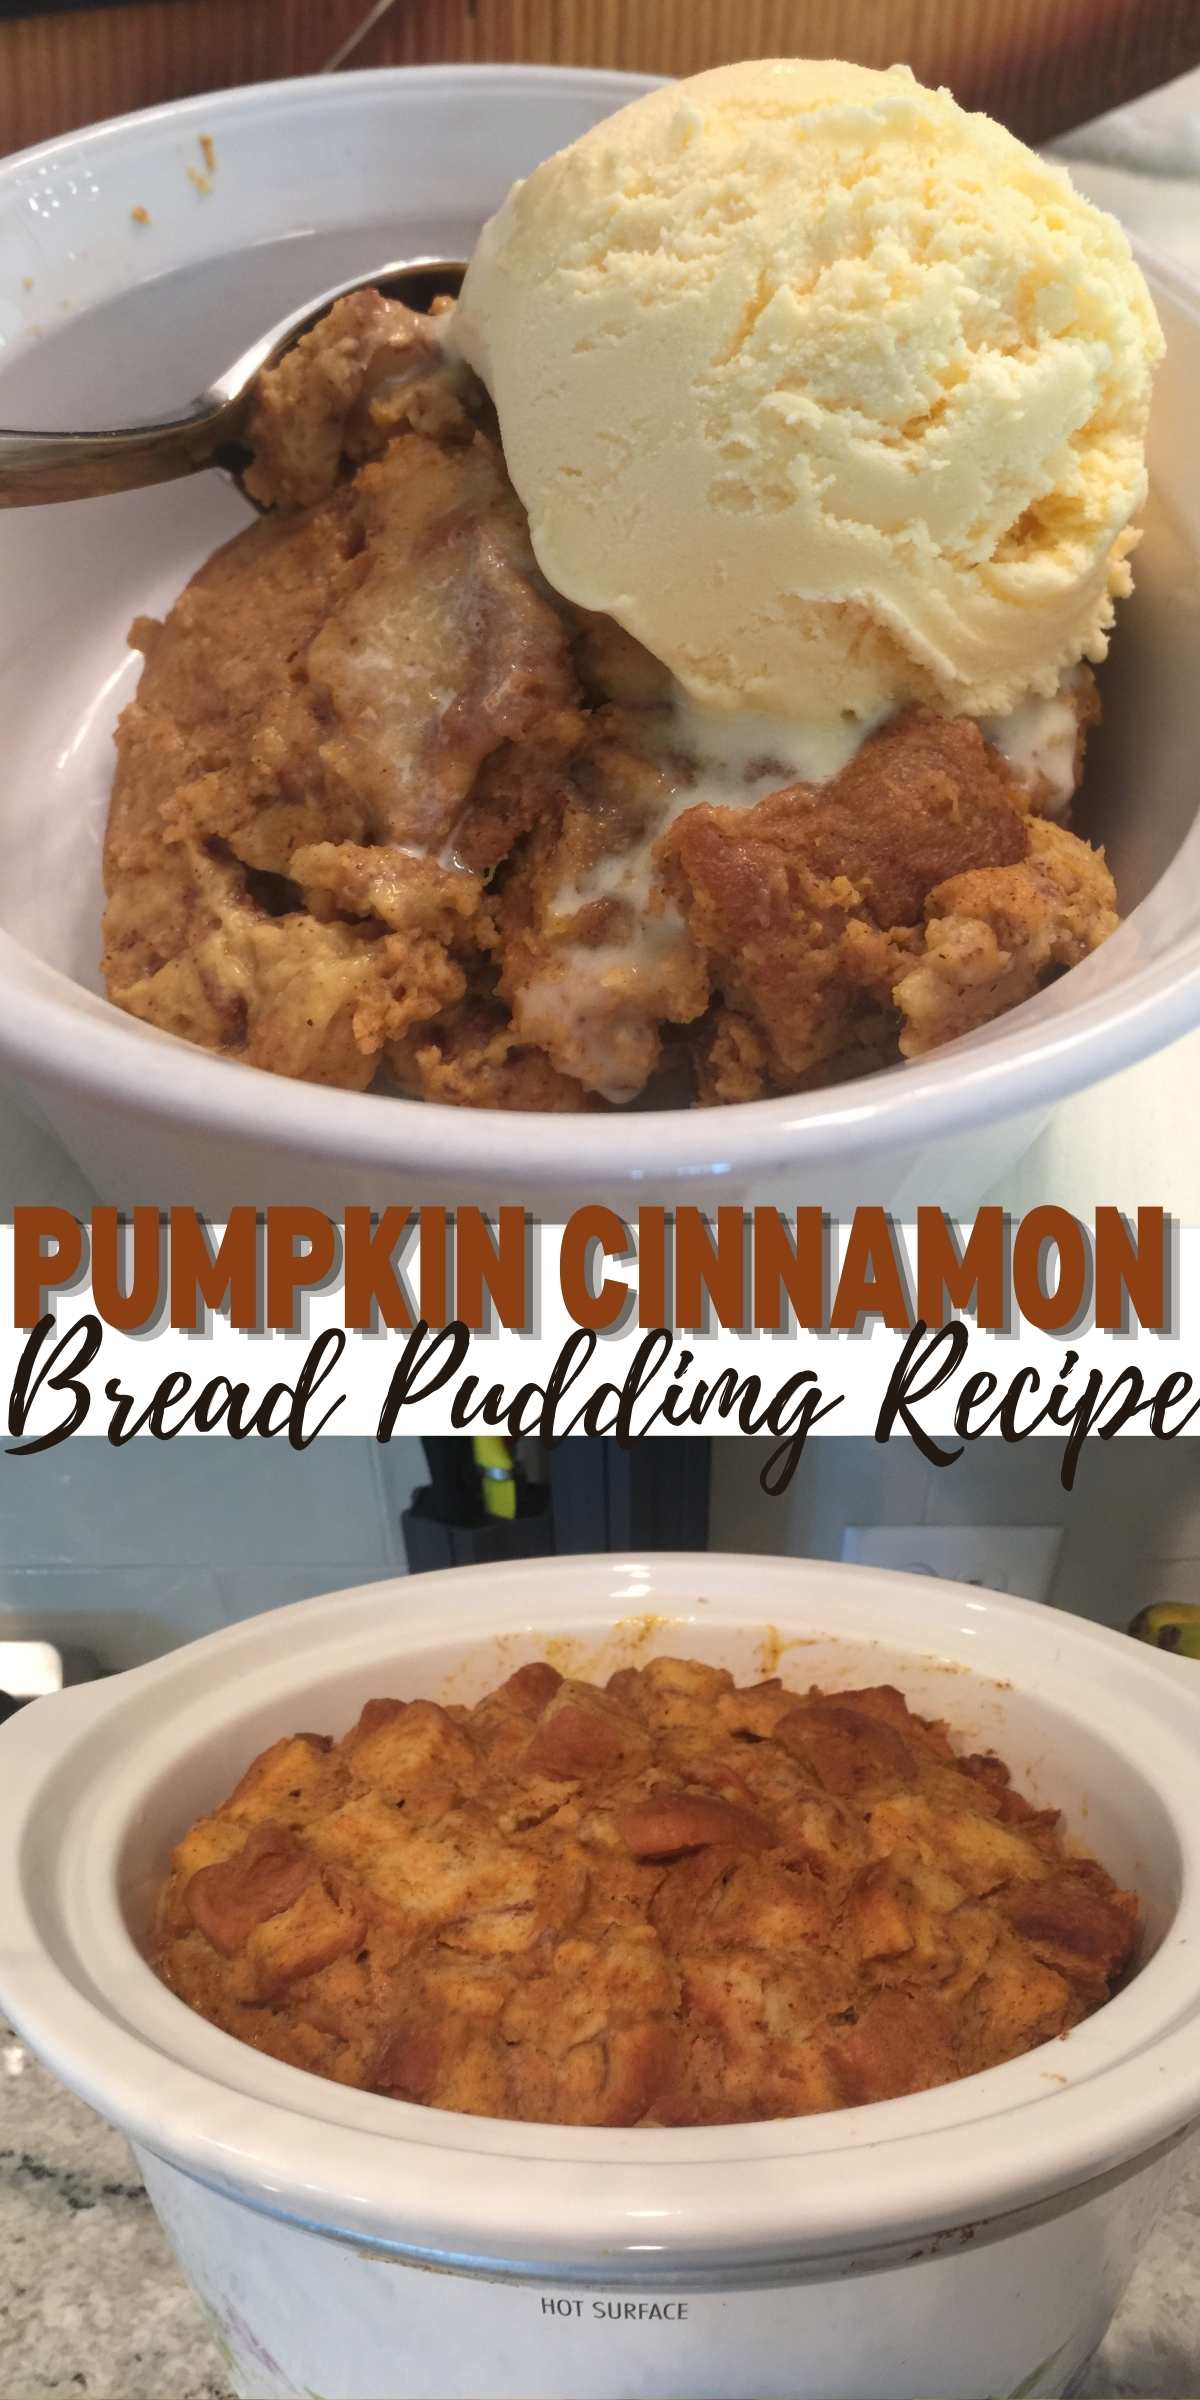 Pumpkin Cinnamon Bread Pudding